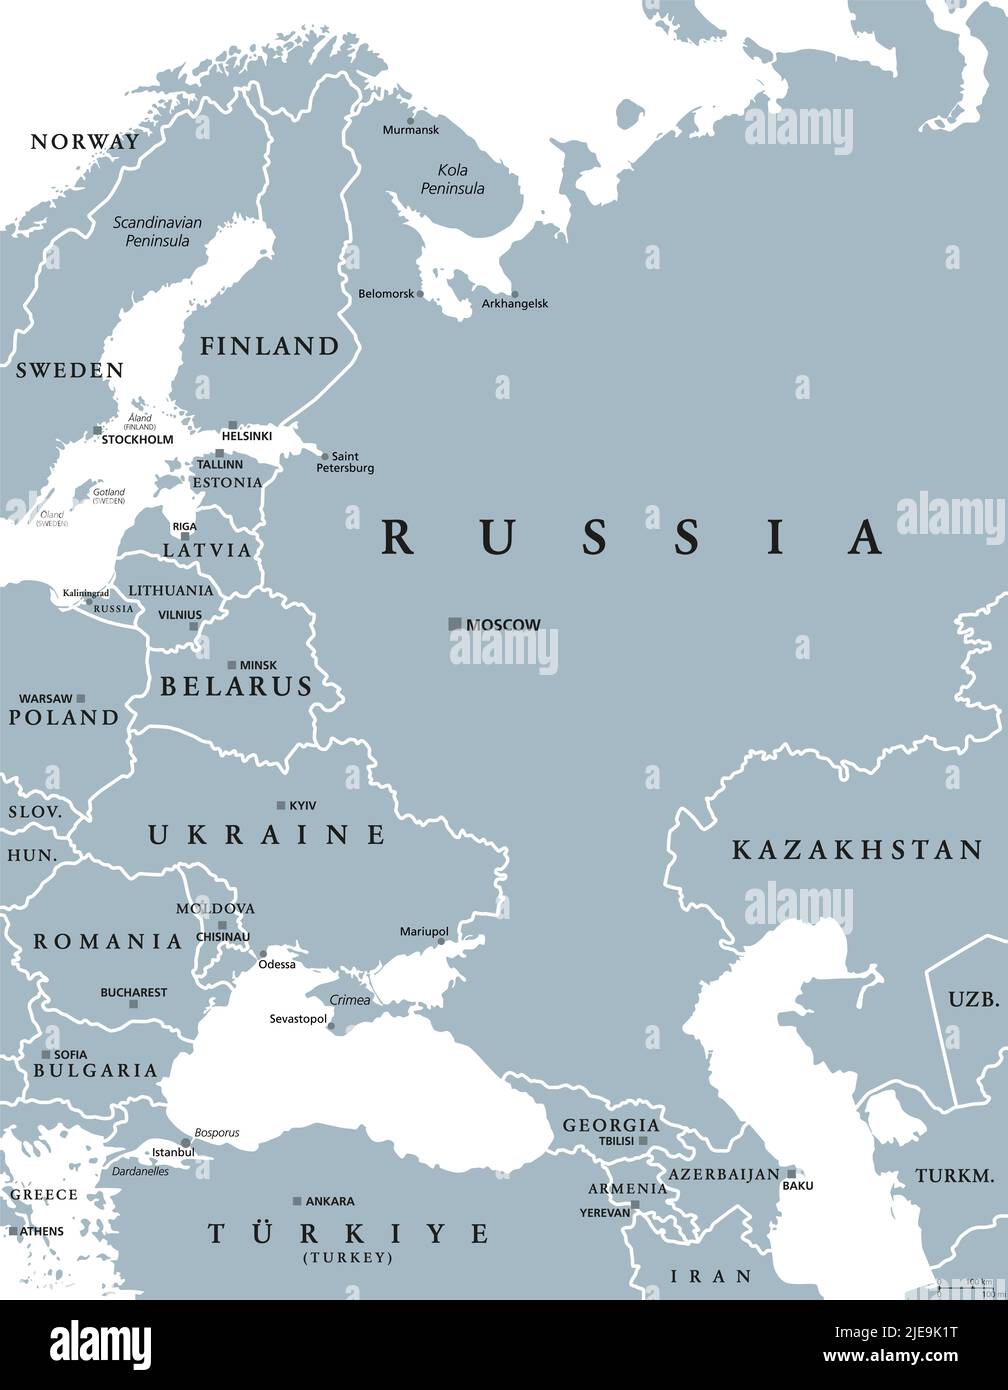 Europa orientale e Asia occidentale, mappa politica grigia. Con il Mar Nero, il Mar Caspio, la Russia europea e una parte dell'Asia centrale. Foto Stock